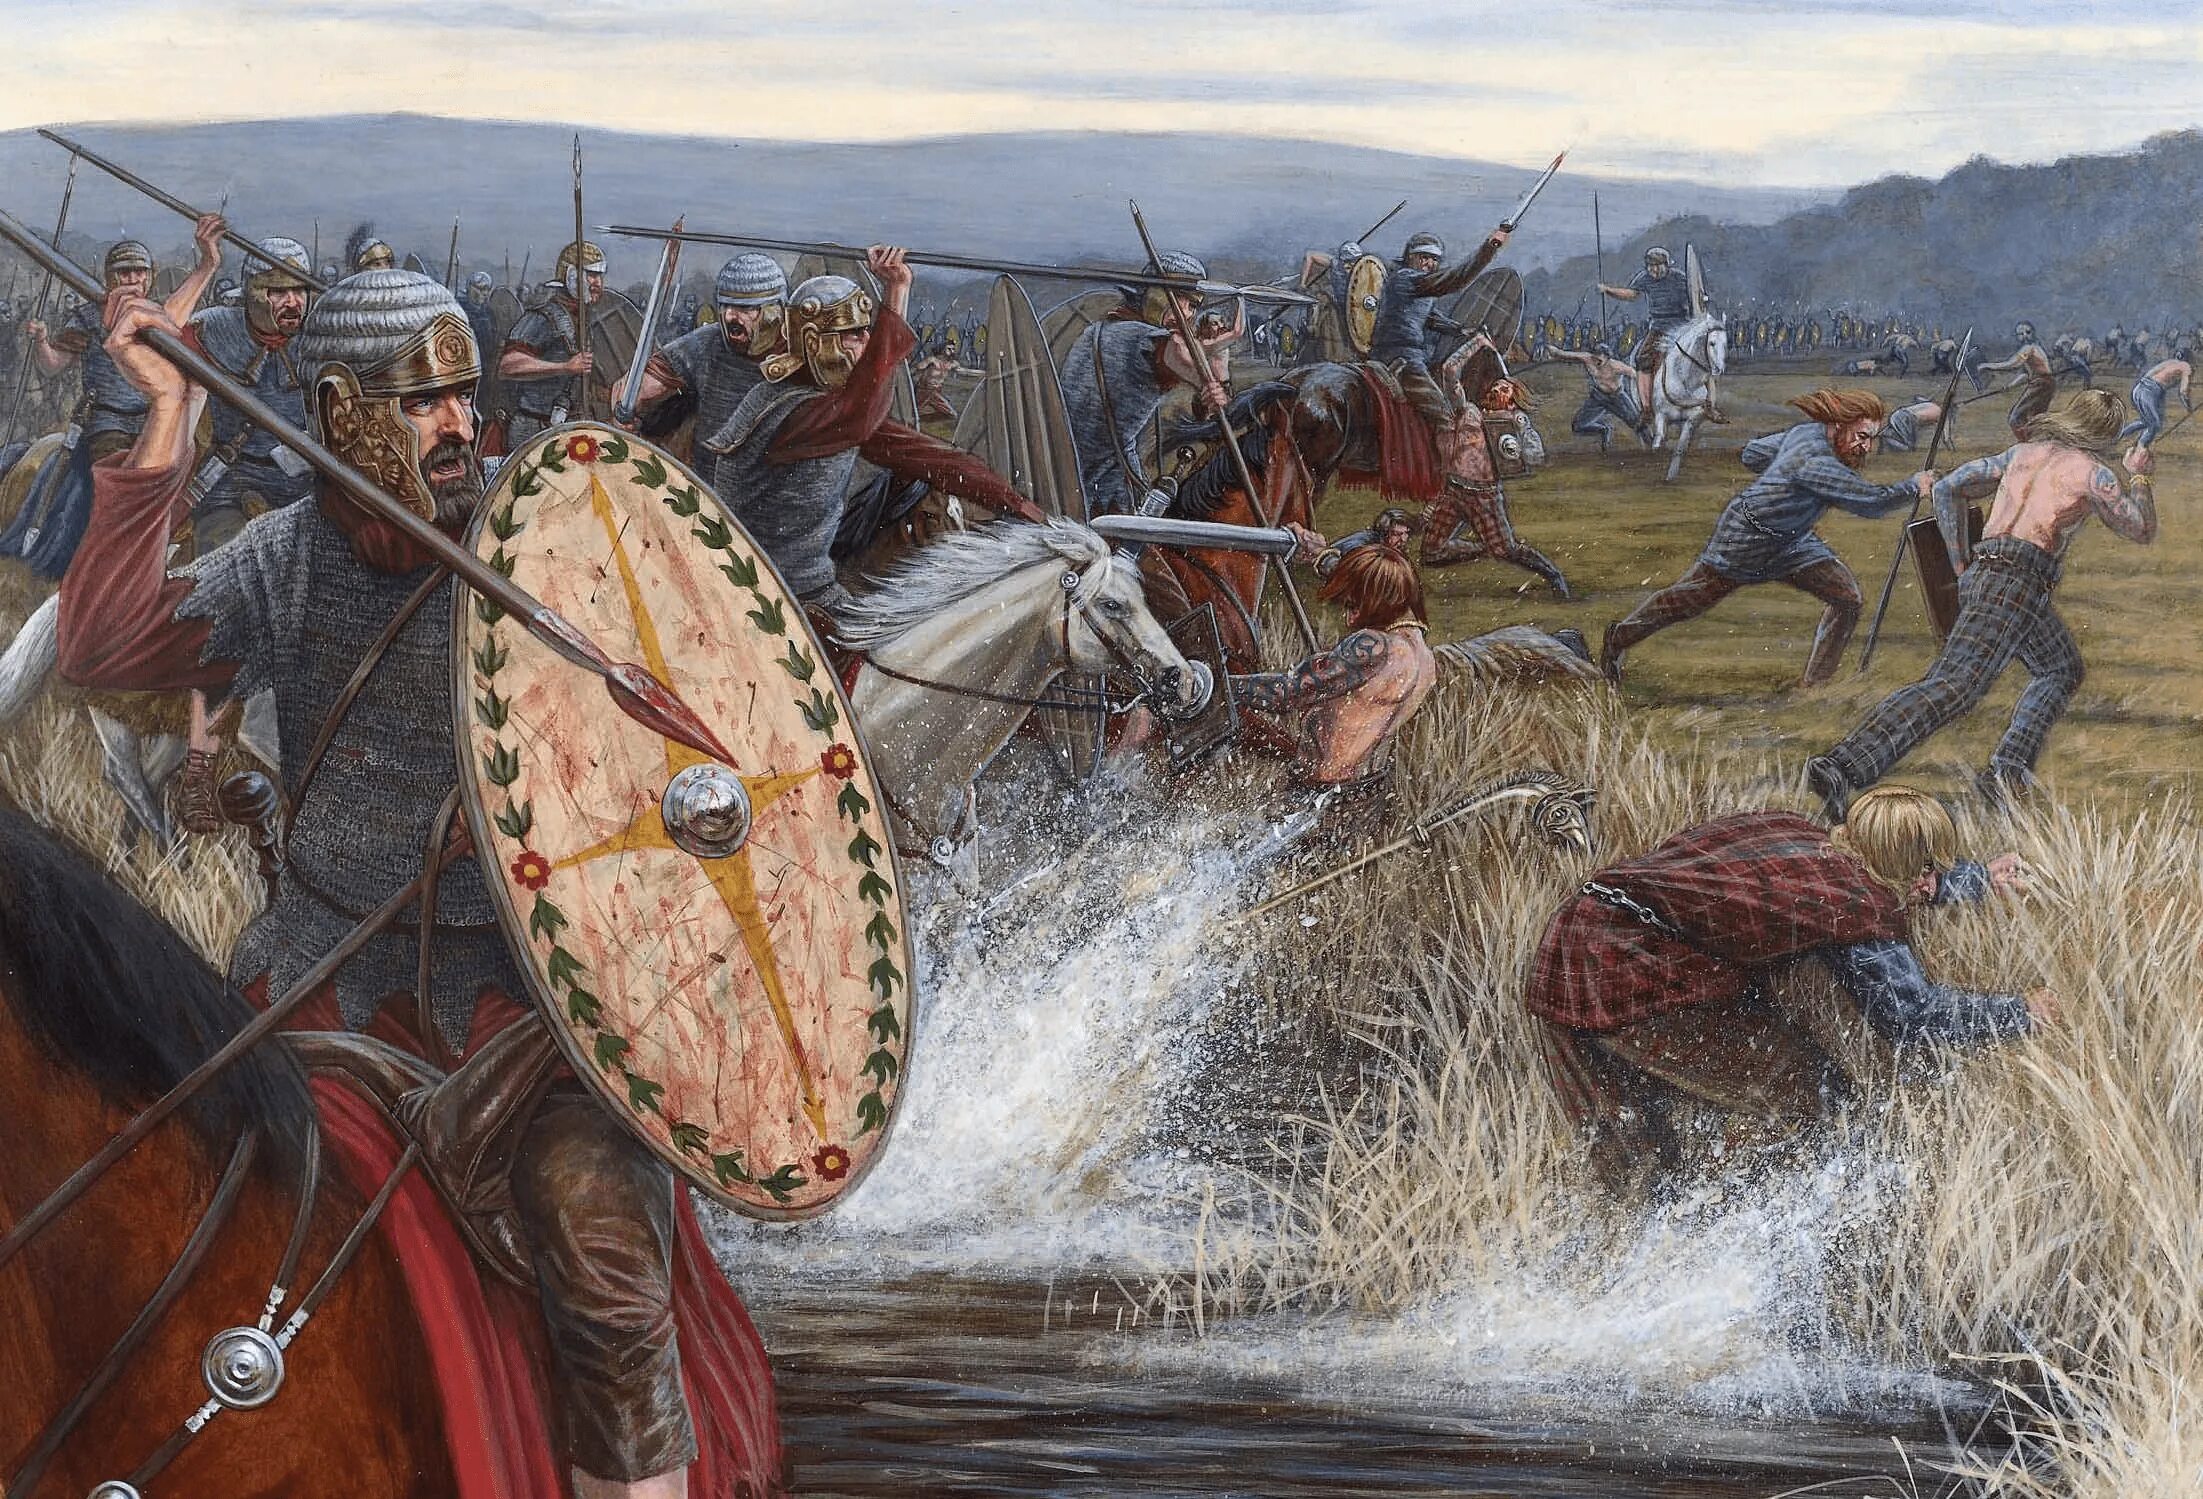 Рим возник на земле где жило племя. Римское завоевание Британии. Завоевание Британии римлянами. Римское завоевание Британии кельтами. Римское завоевание Британии век.